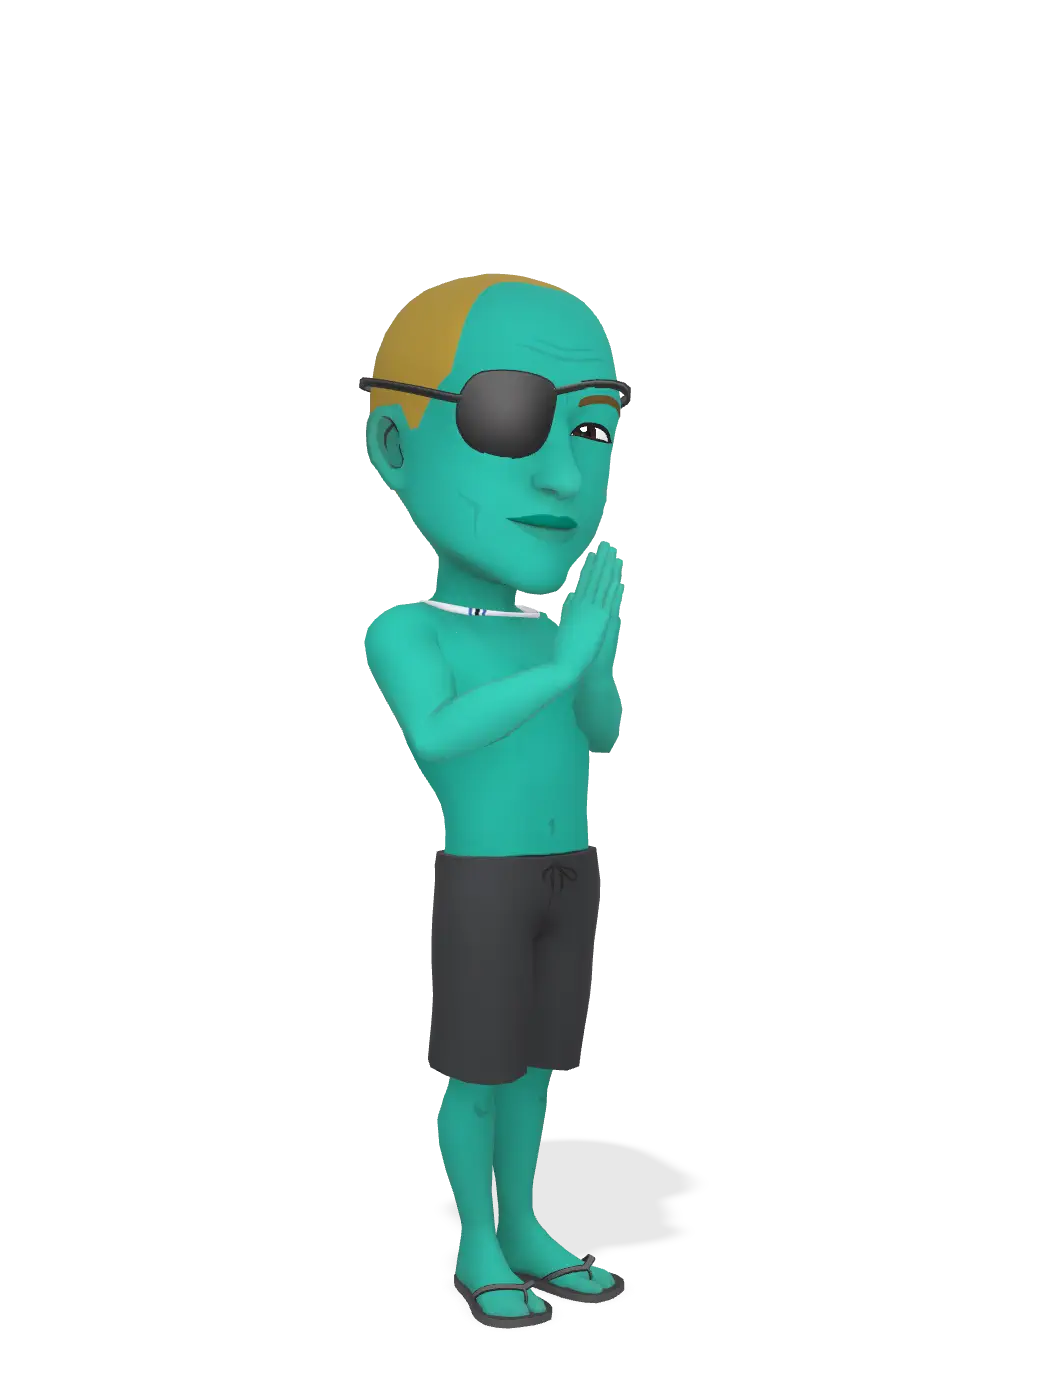 3D Bitmoji for lukemondo avatar